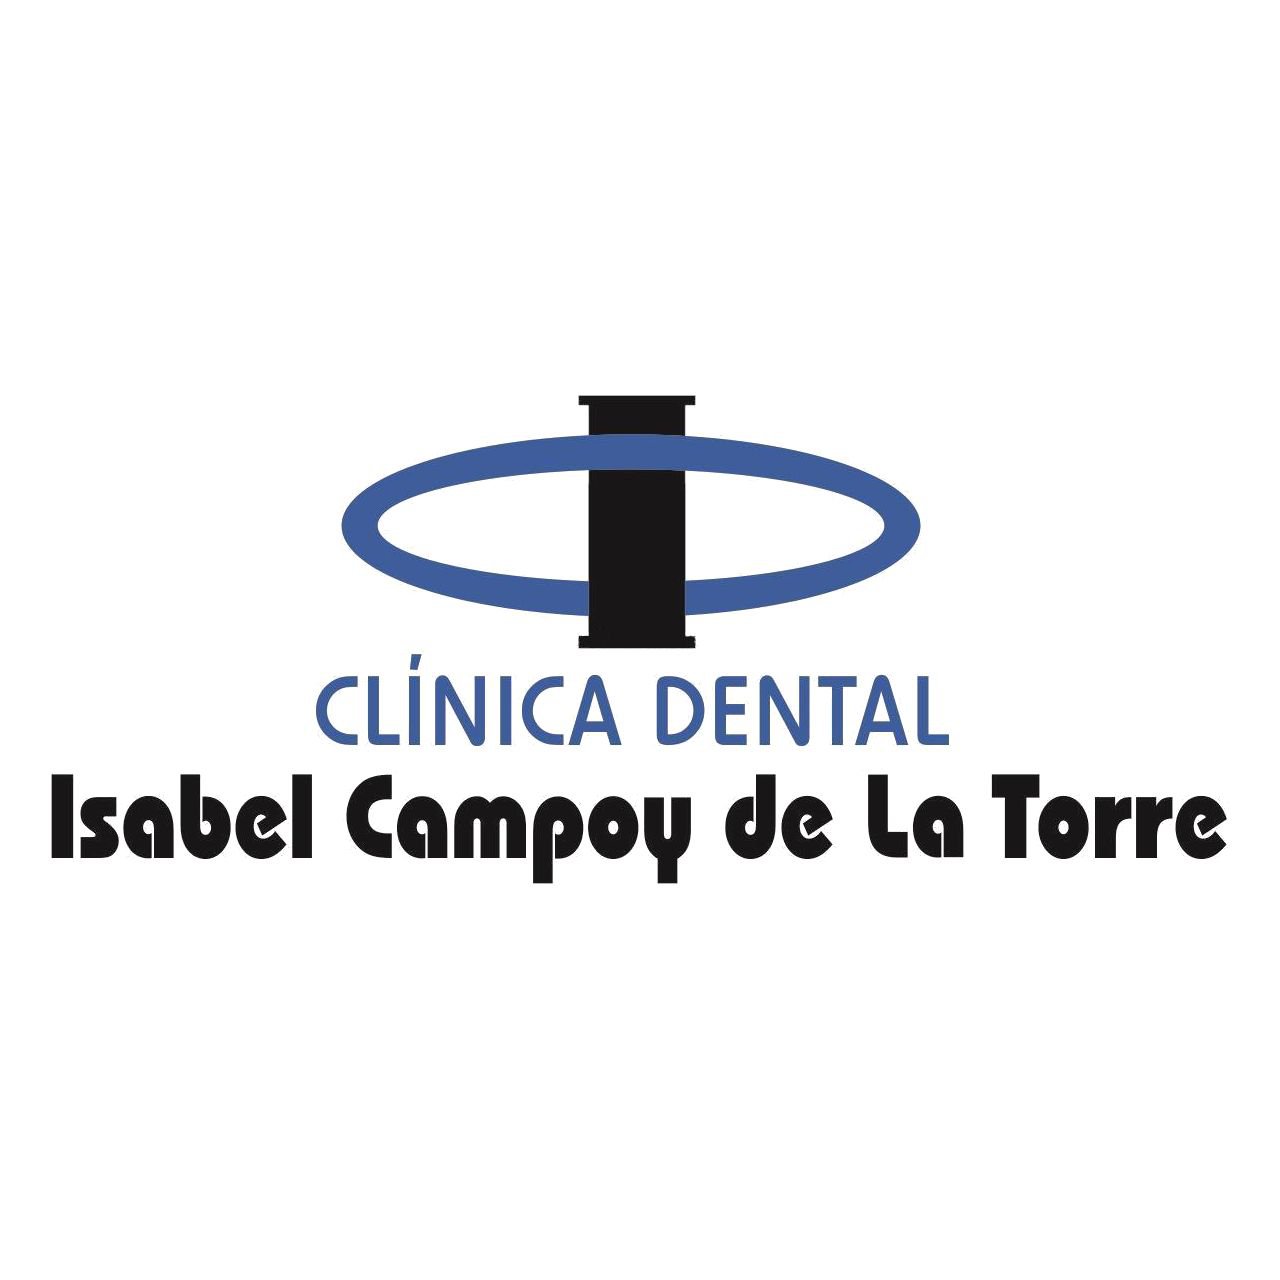  Isabel Campoy De La Torre. Dentistas en Santiago de Compostela